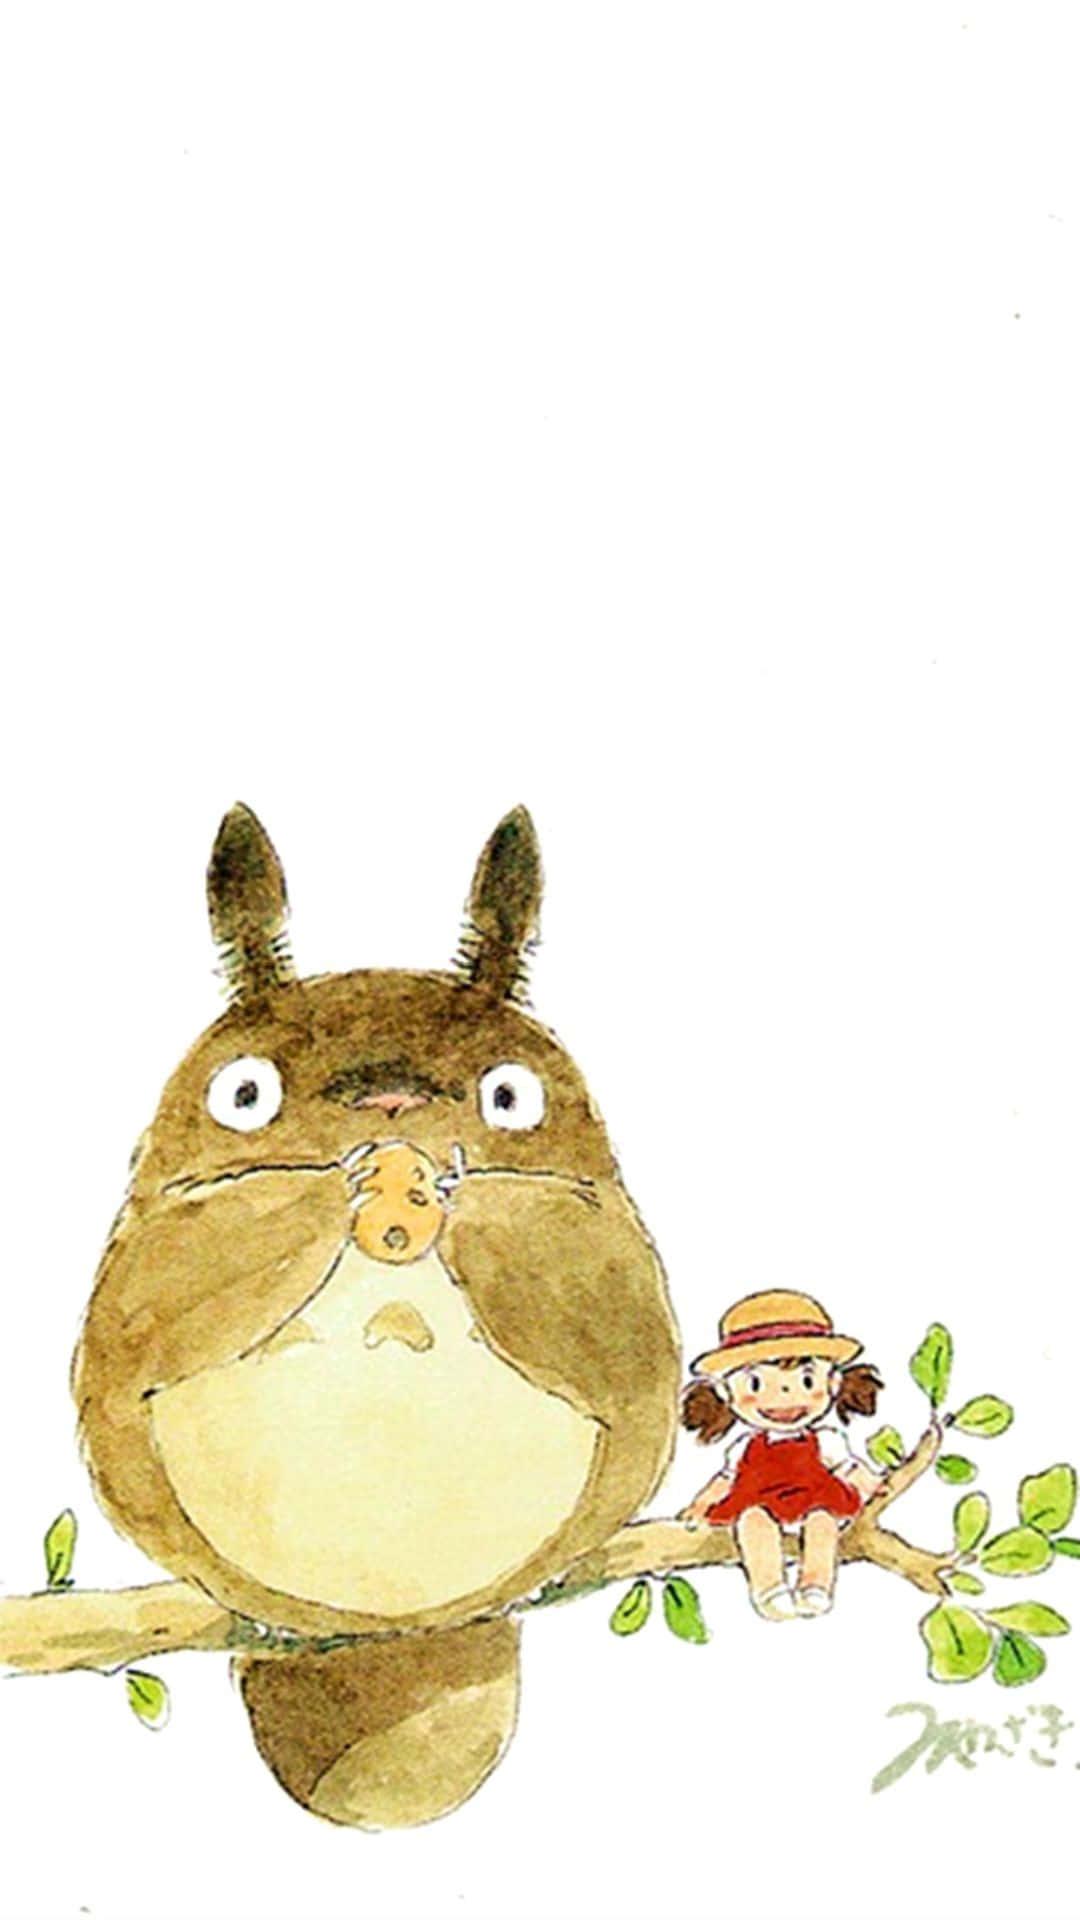 Derentzückend Liebenswürdige, Geheimnisvolle Totoro